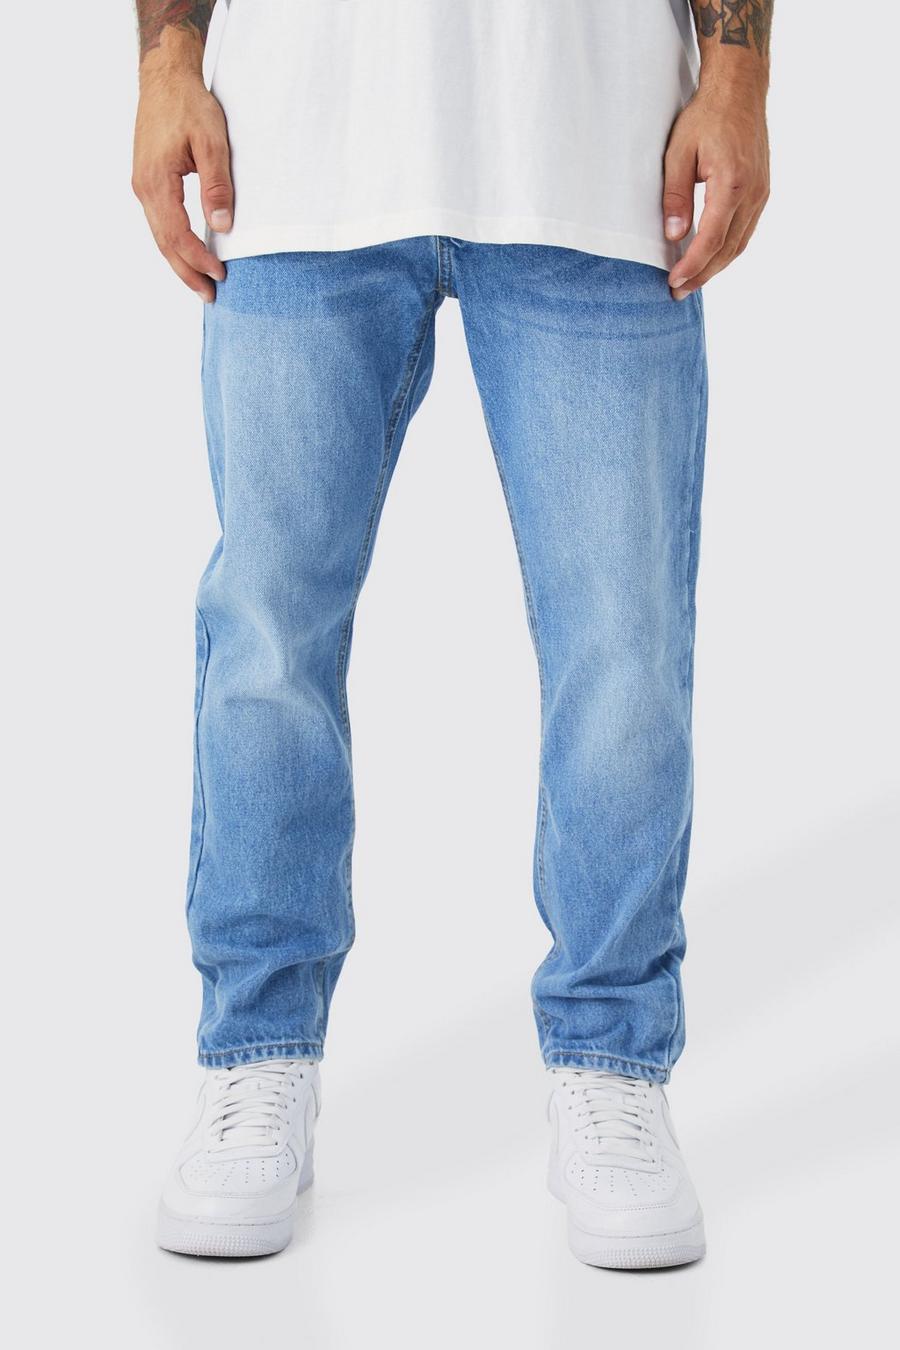 Light blue ג'ינס מבד קשיח בגזרת קרסול צרה